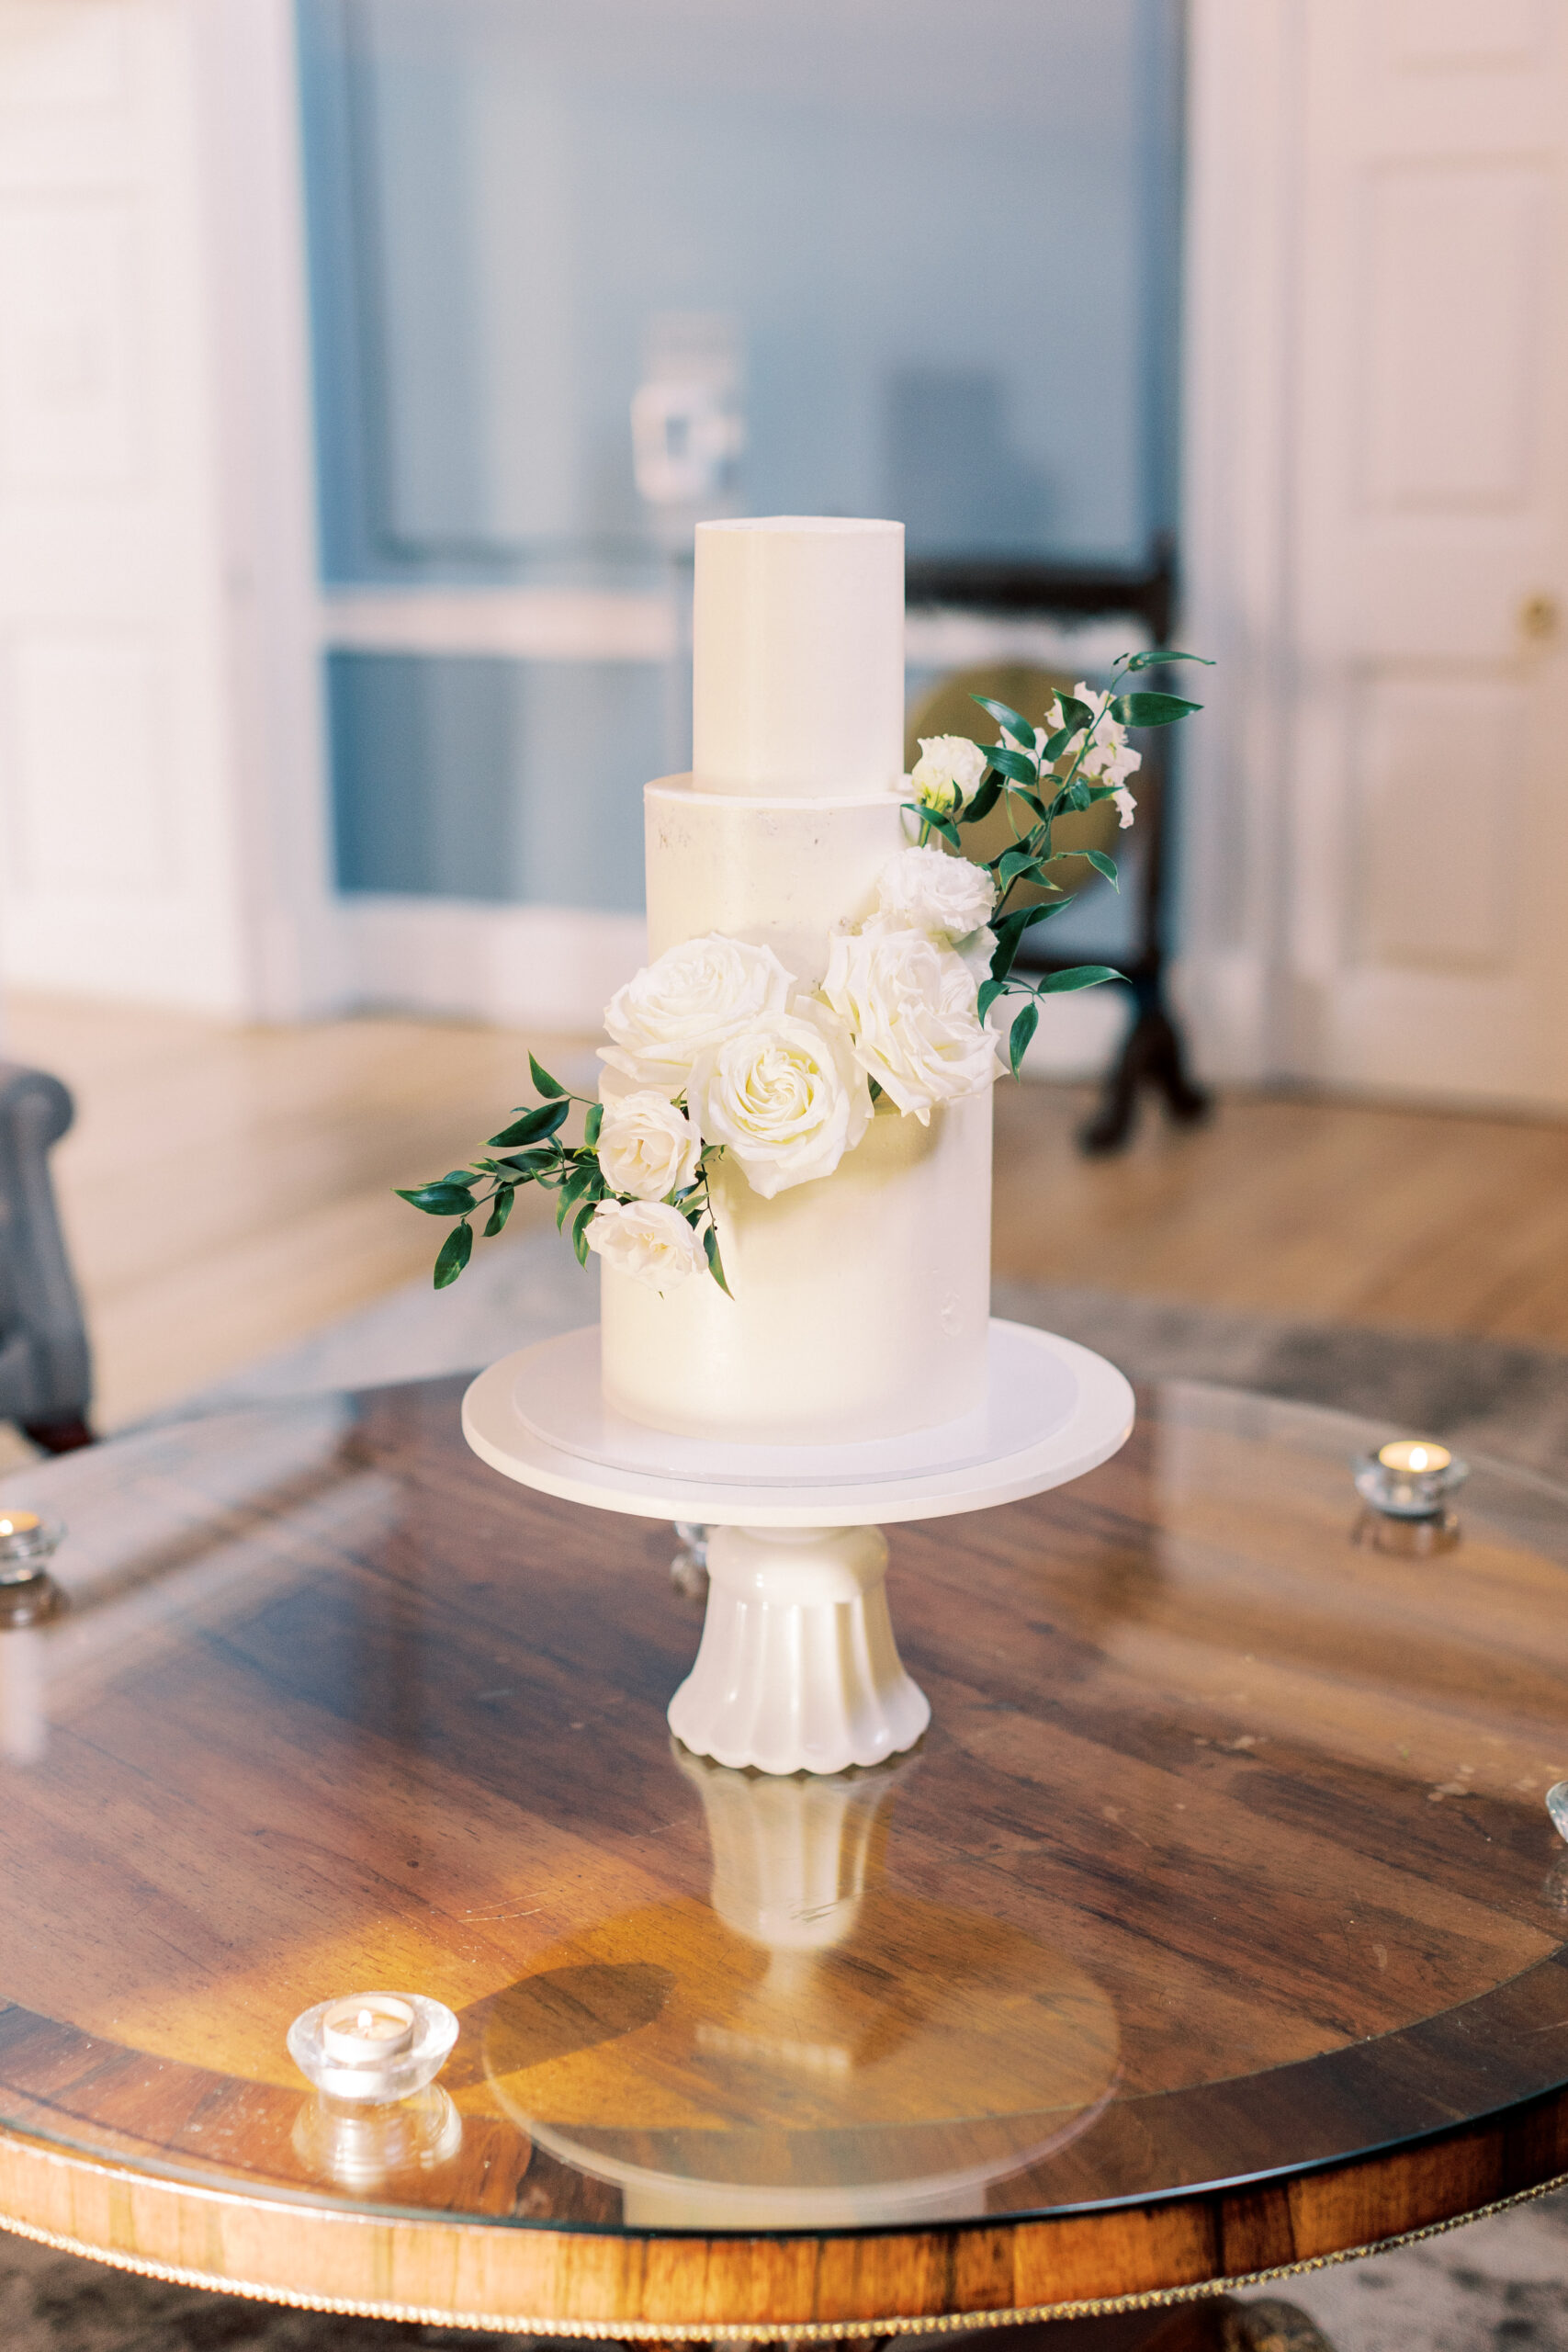 Synnotts Signature Bakes | Wedding Cake Designer in Ireland